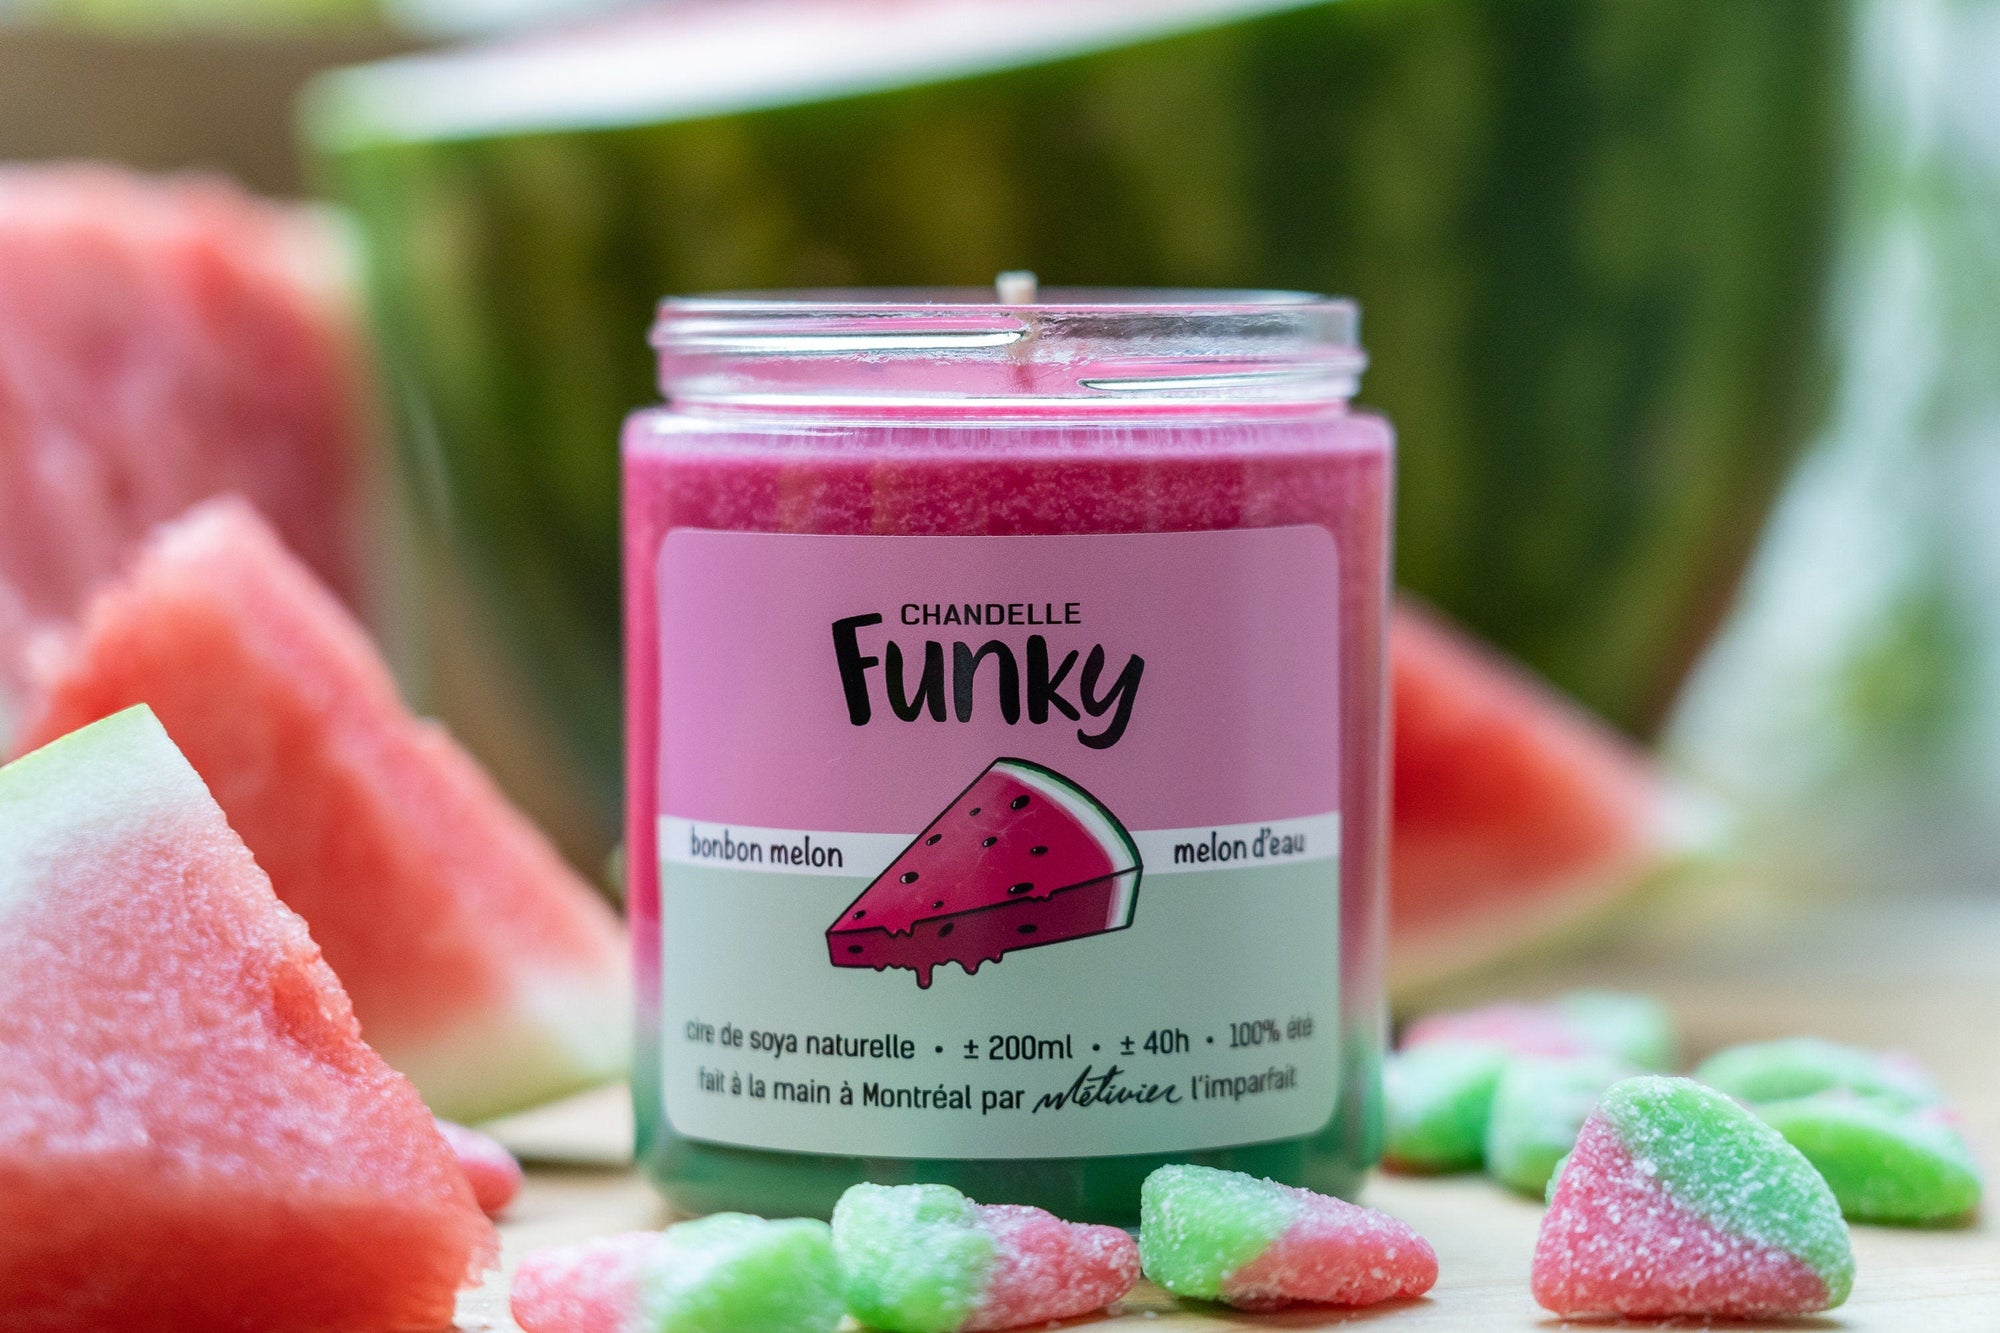 Chandelle Melon d'eau - Funky - Funky & Co.